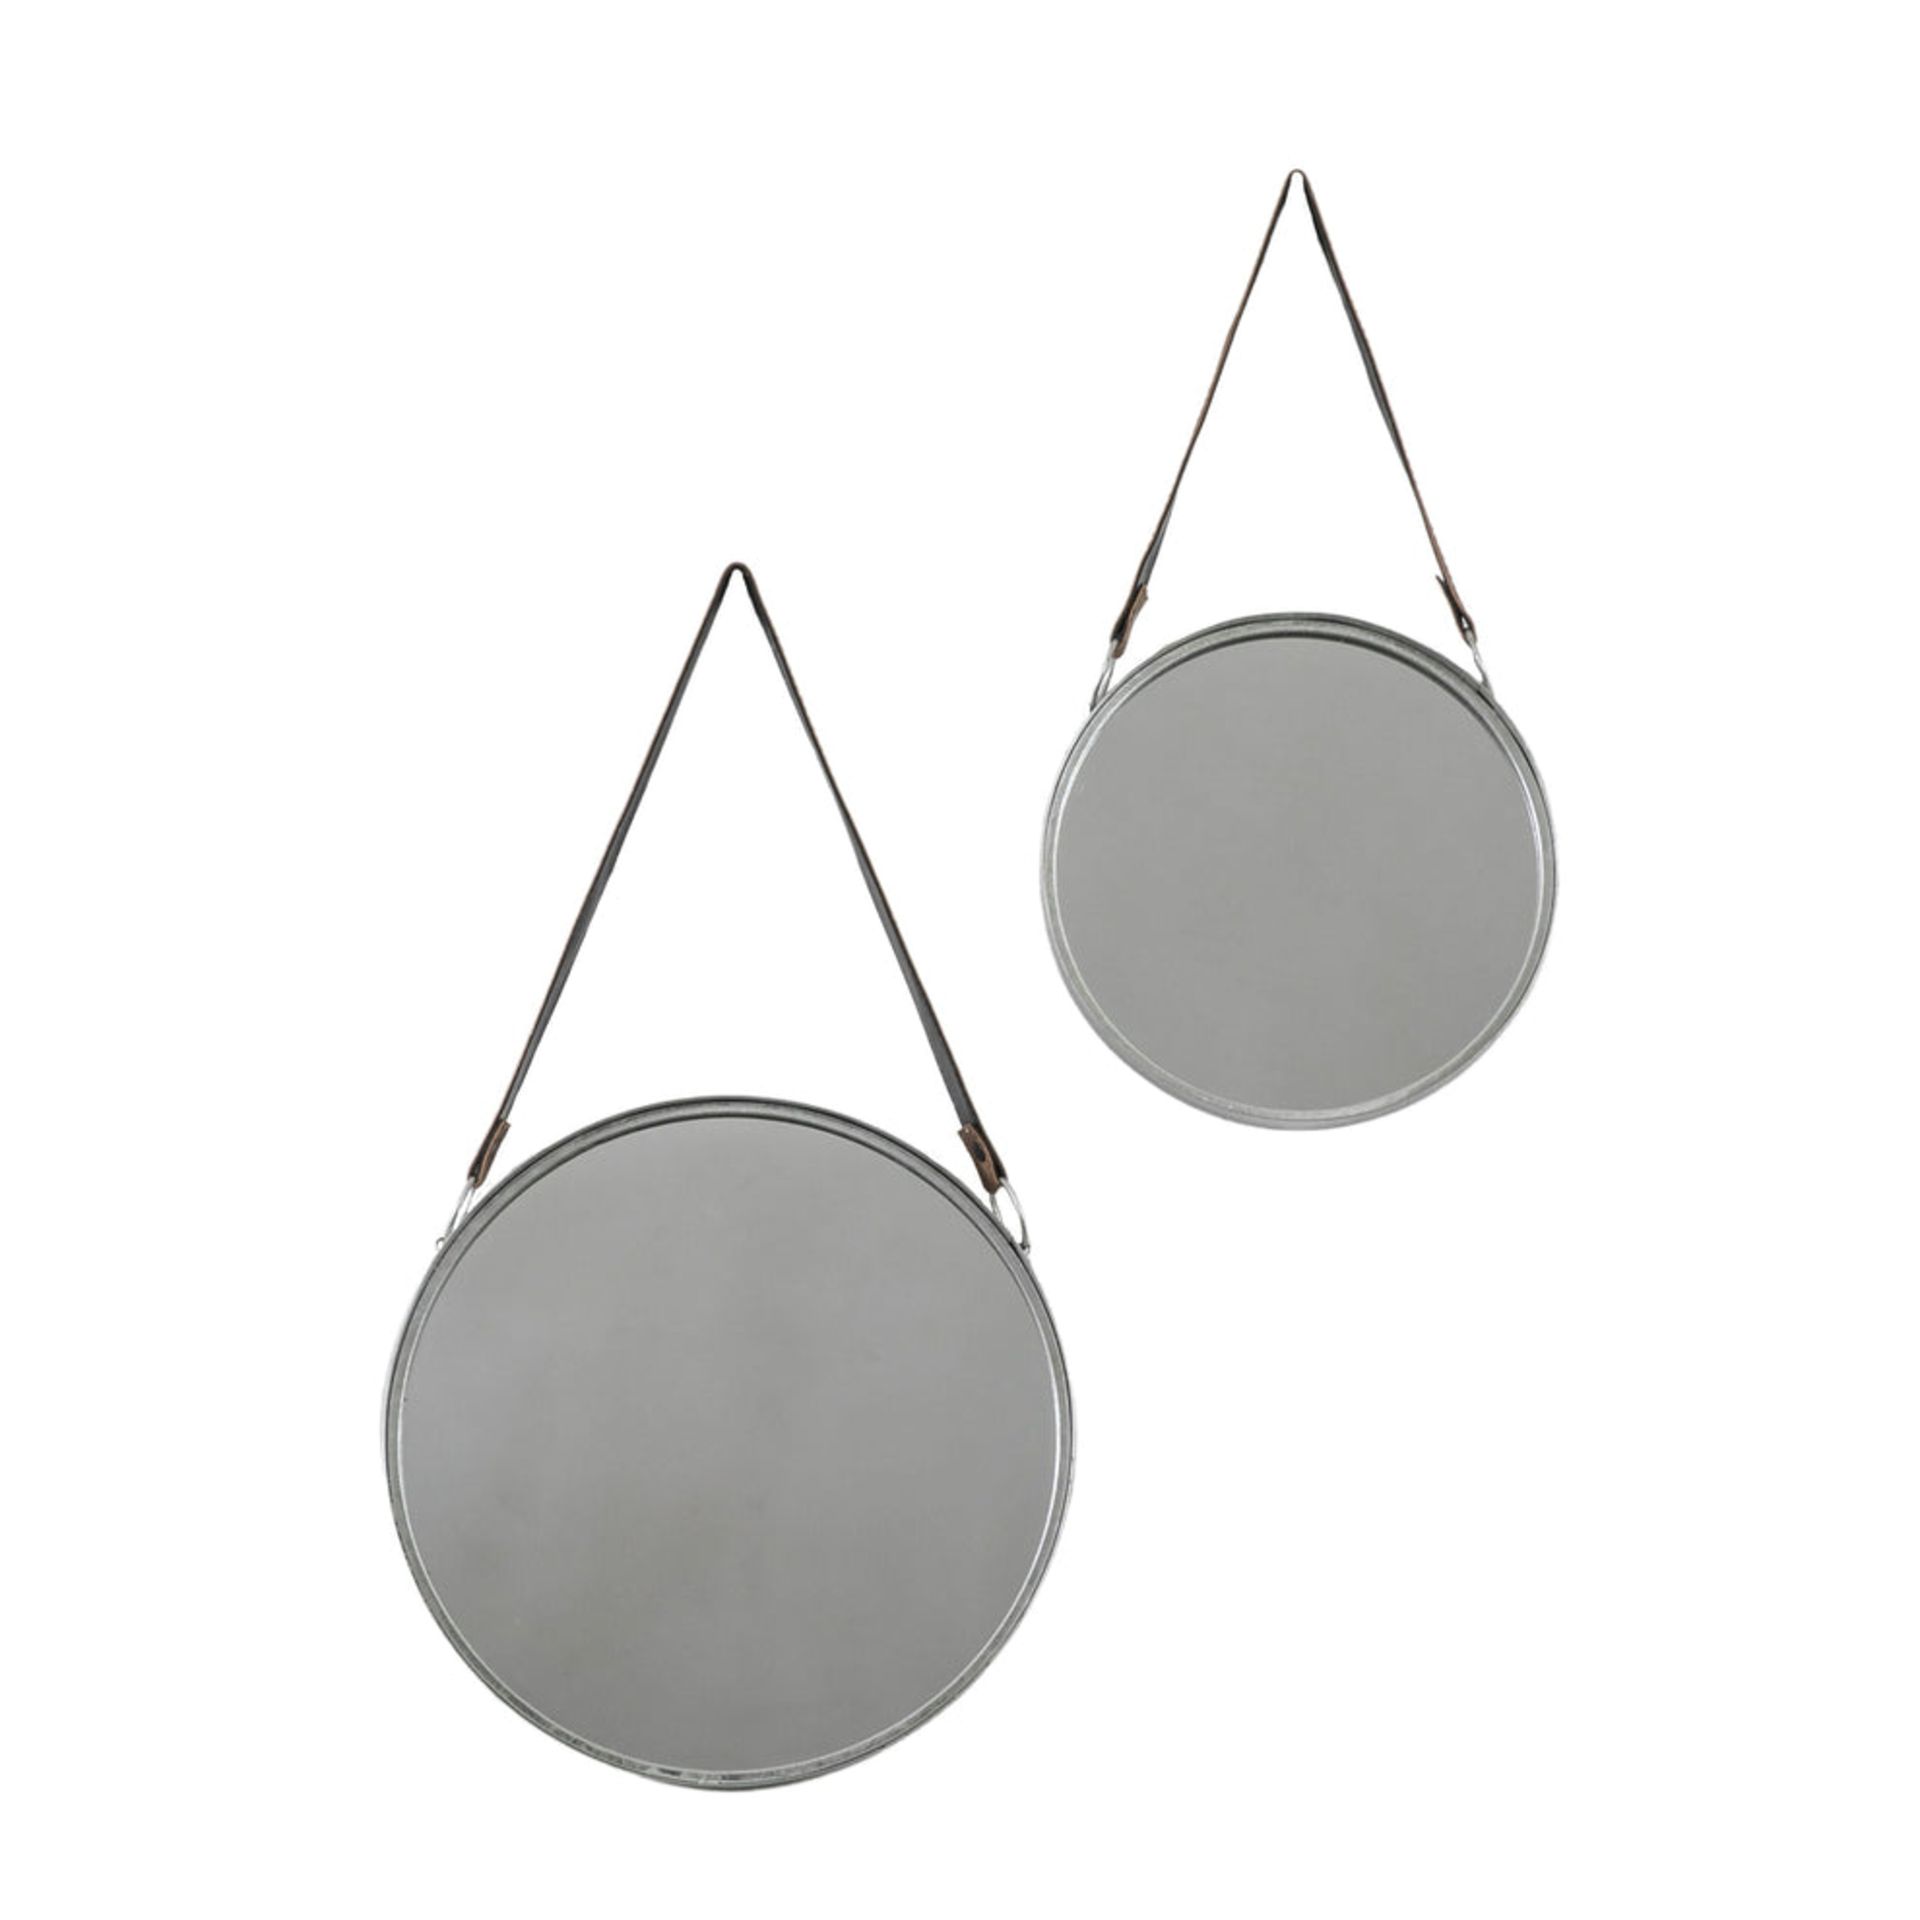 John Lewis Marston Round Metal Frame Mirrors, Faux Leather Straps, Set of 2, Silver - PRICED £100